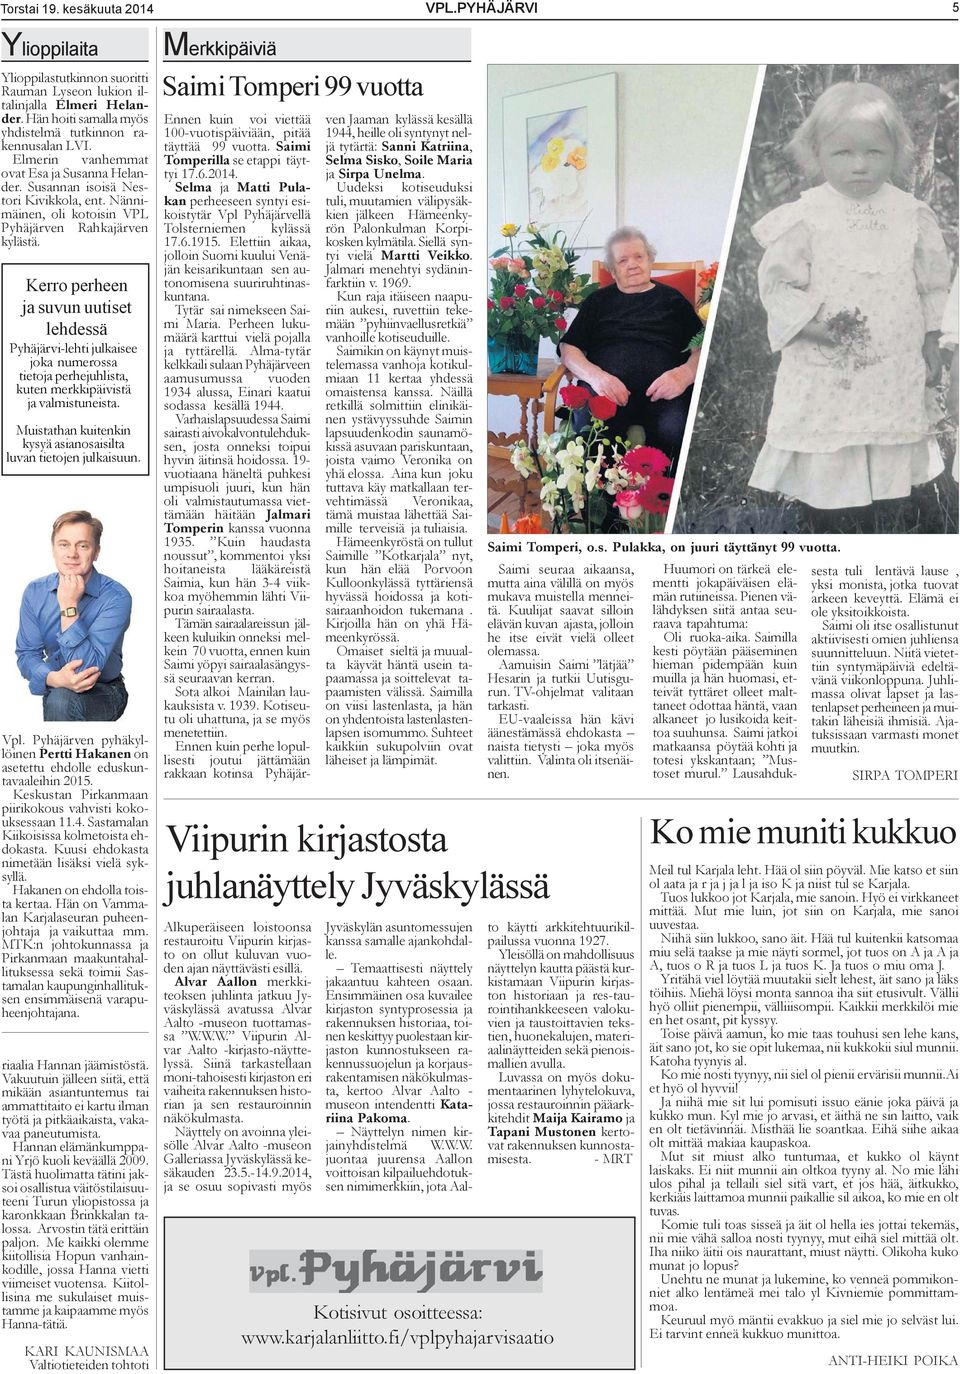 Kerro perheen ja suvun uutiset lehdessä Pyhäjärvi-lehti julkaisee joka numerossa tietoja perhejuhlista, kuten merkkipäivistä ja valmistuneista.